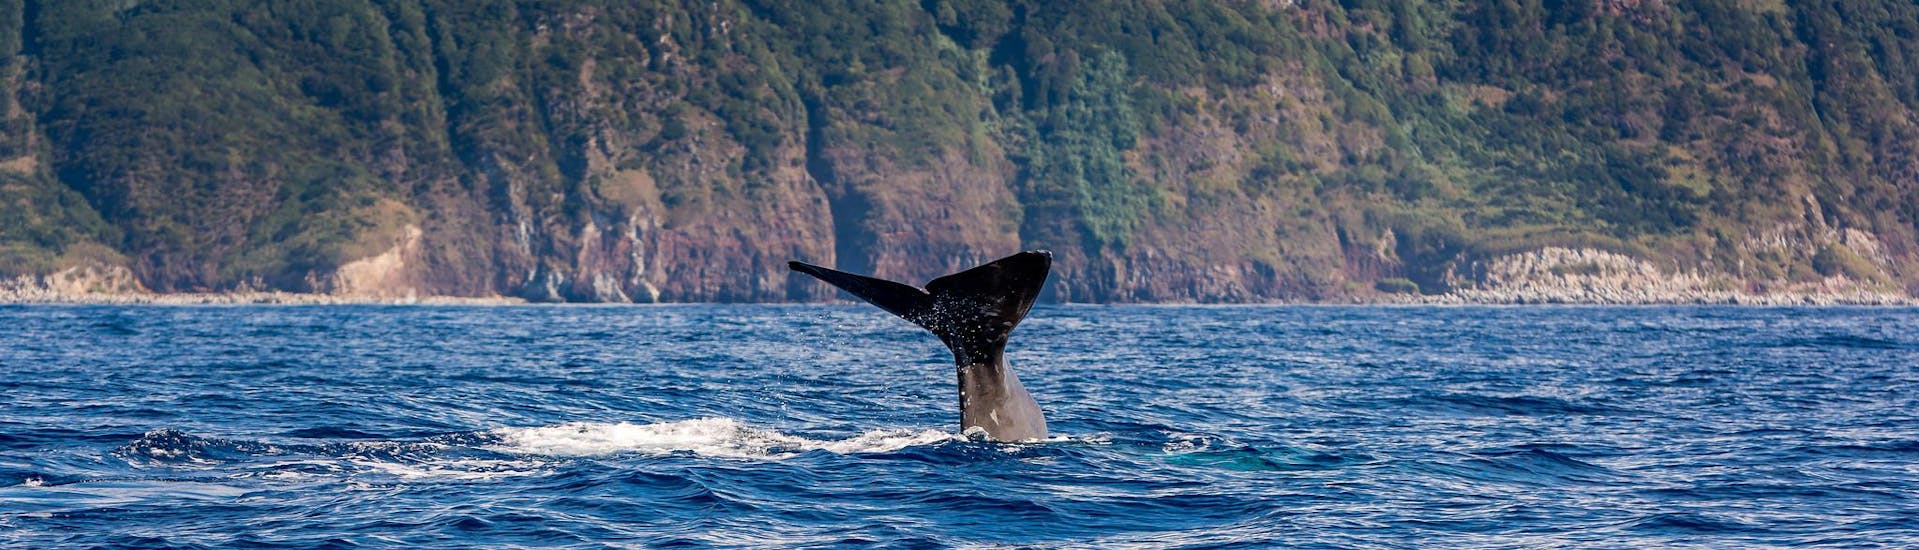 Une queue de baleine aperçue par les personnes qui font une excursion en bateau pour observer les baleines.